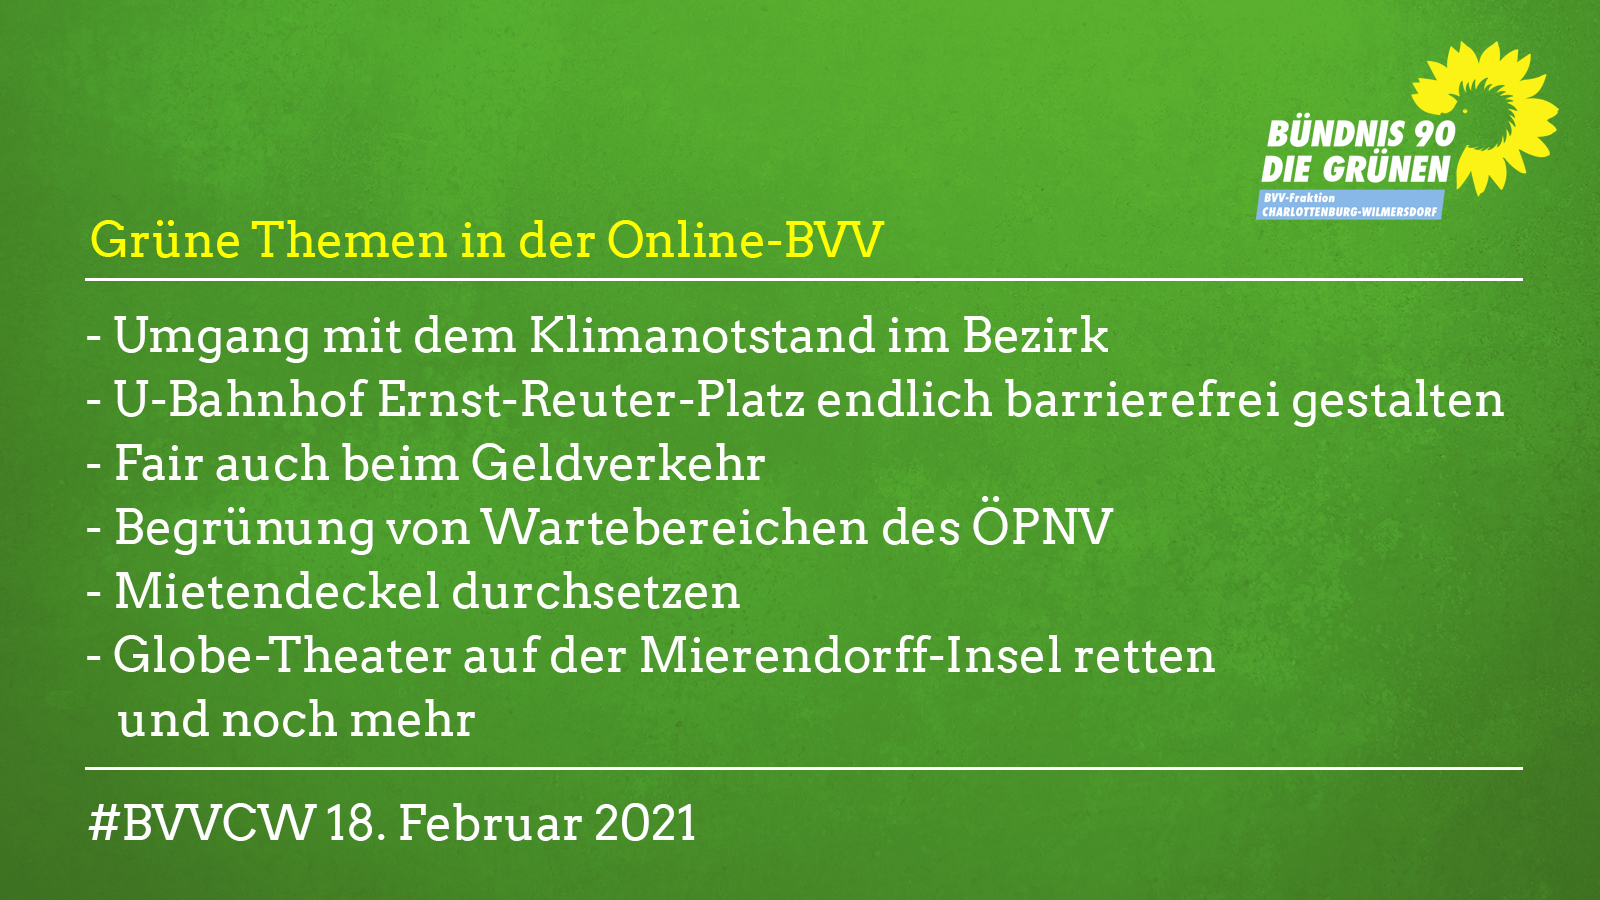 Grüne Themen in der BVV am 18.2.21